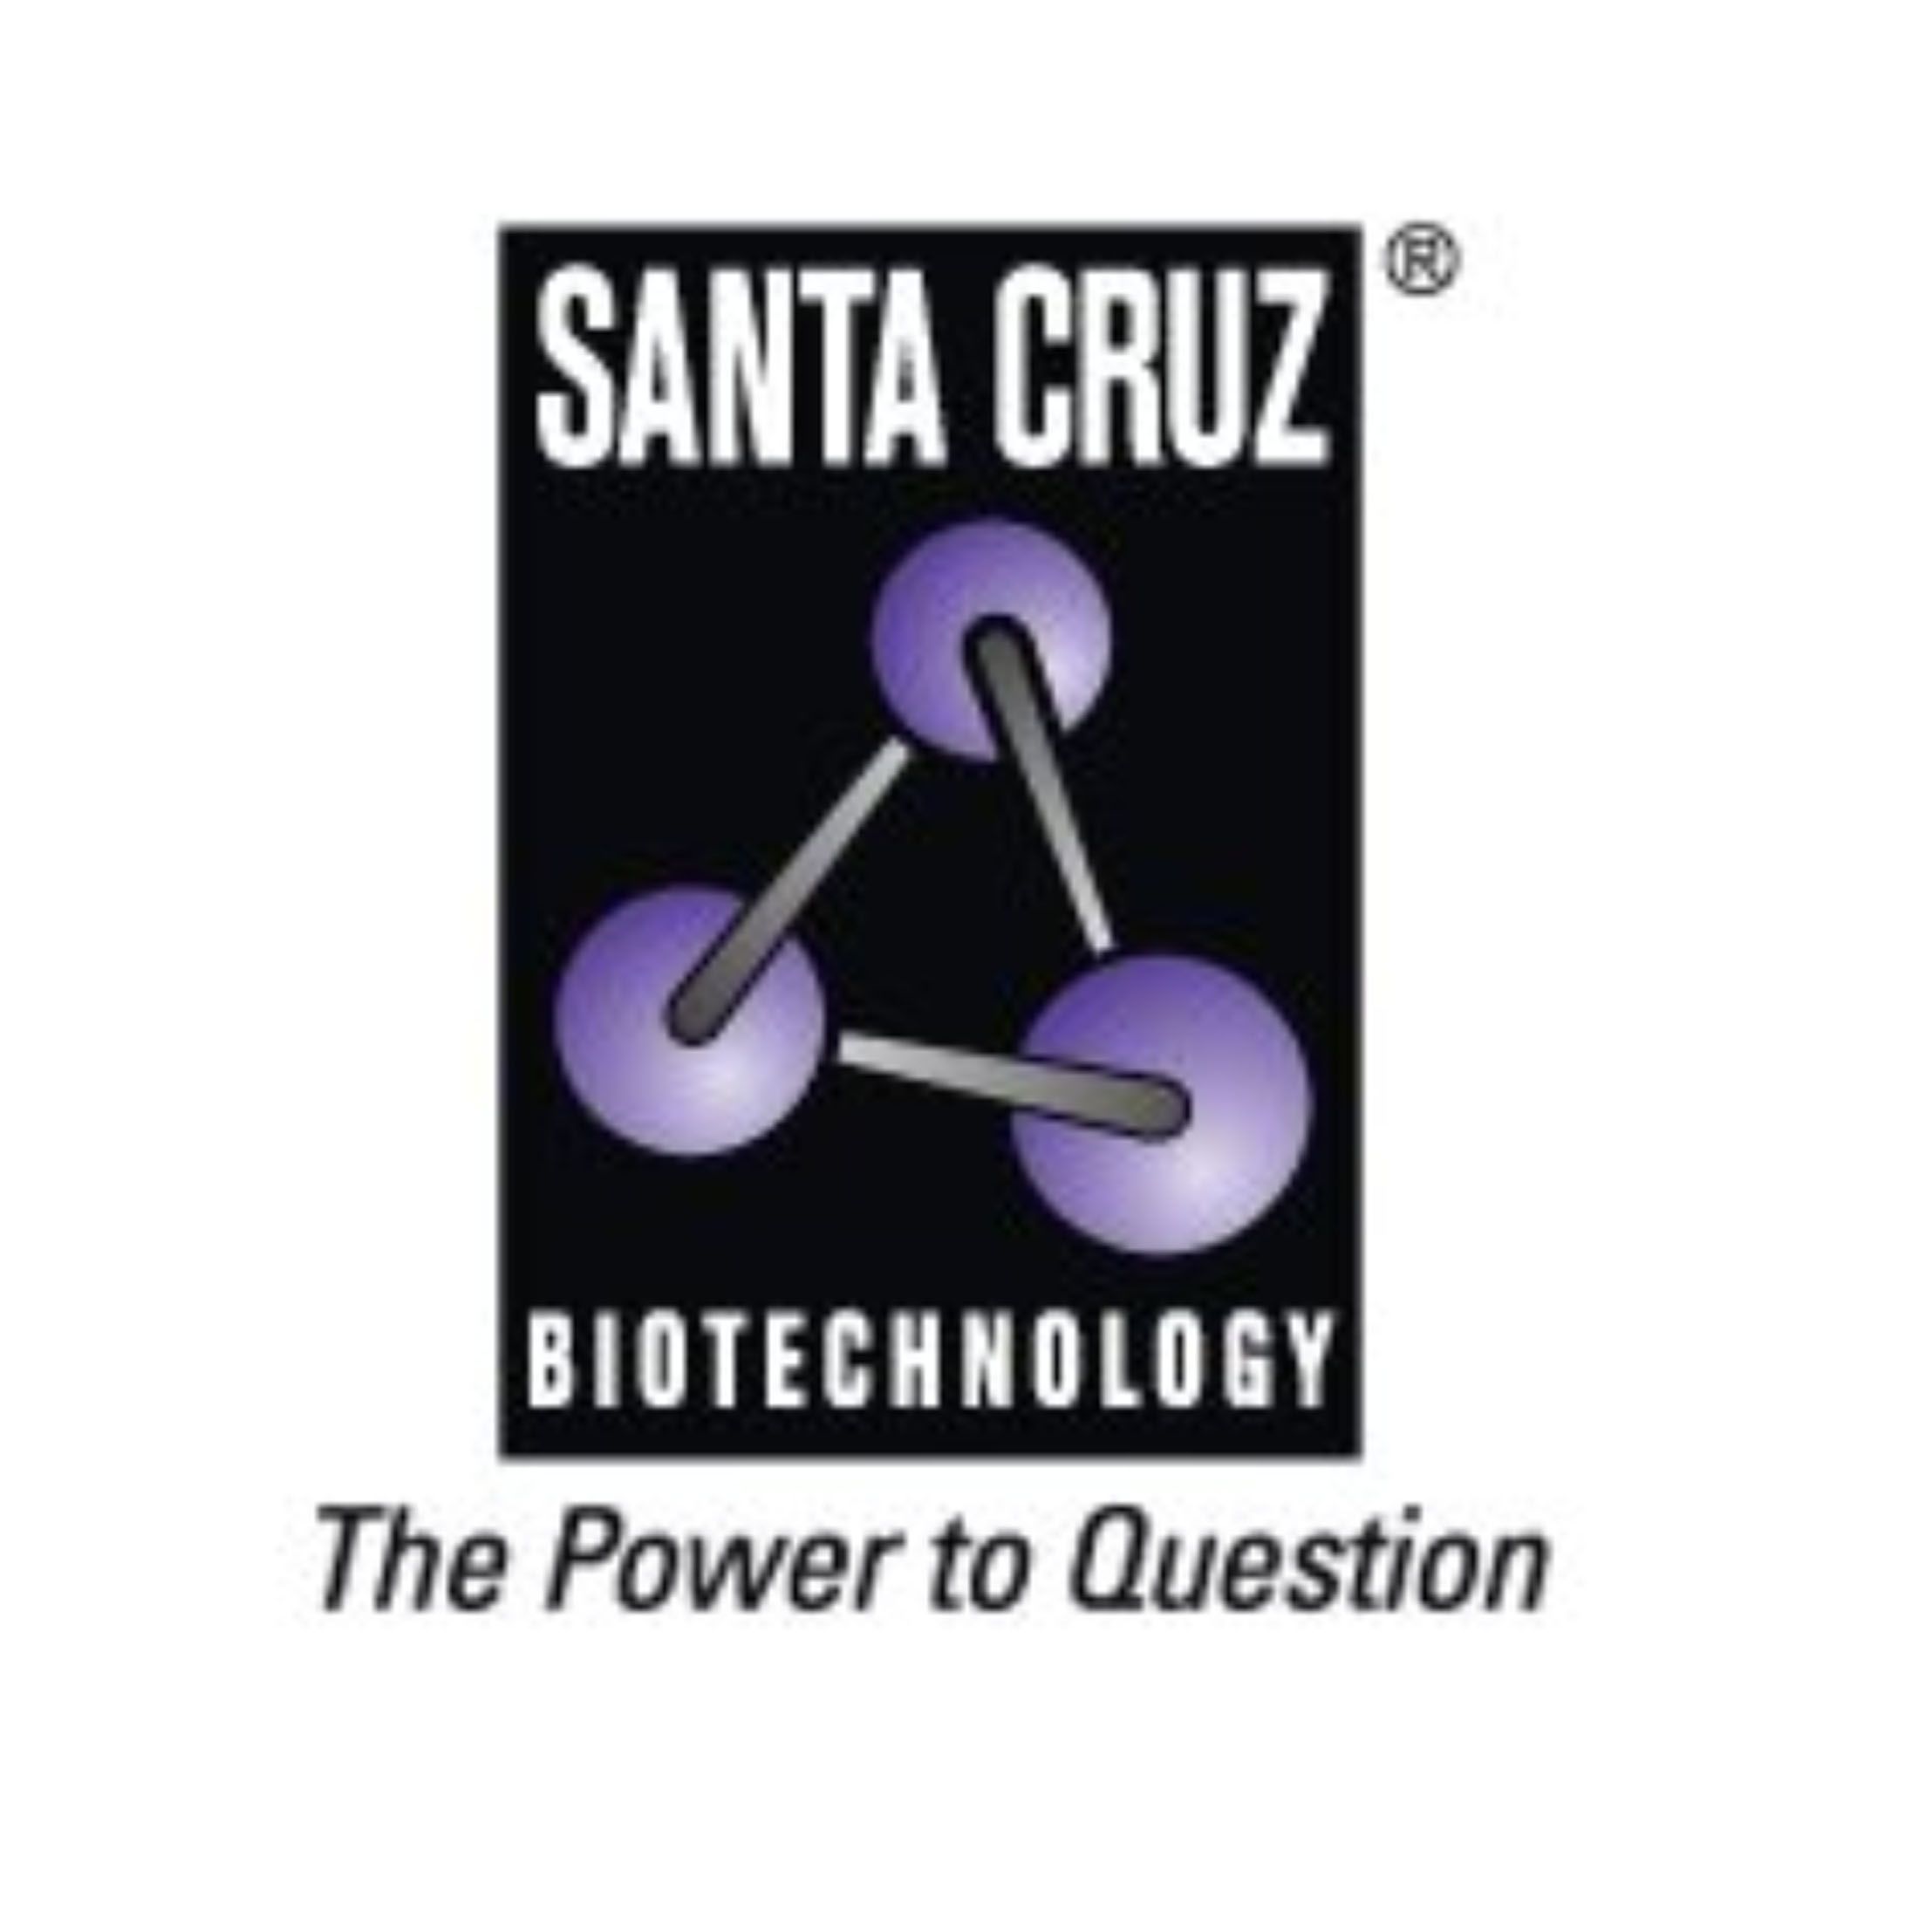 SCBT-Santa Cruz BiotechnologyROR抗体、Luciferase 抗体、类固醇受体